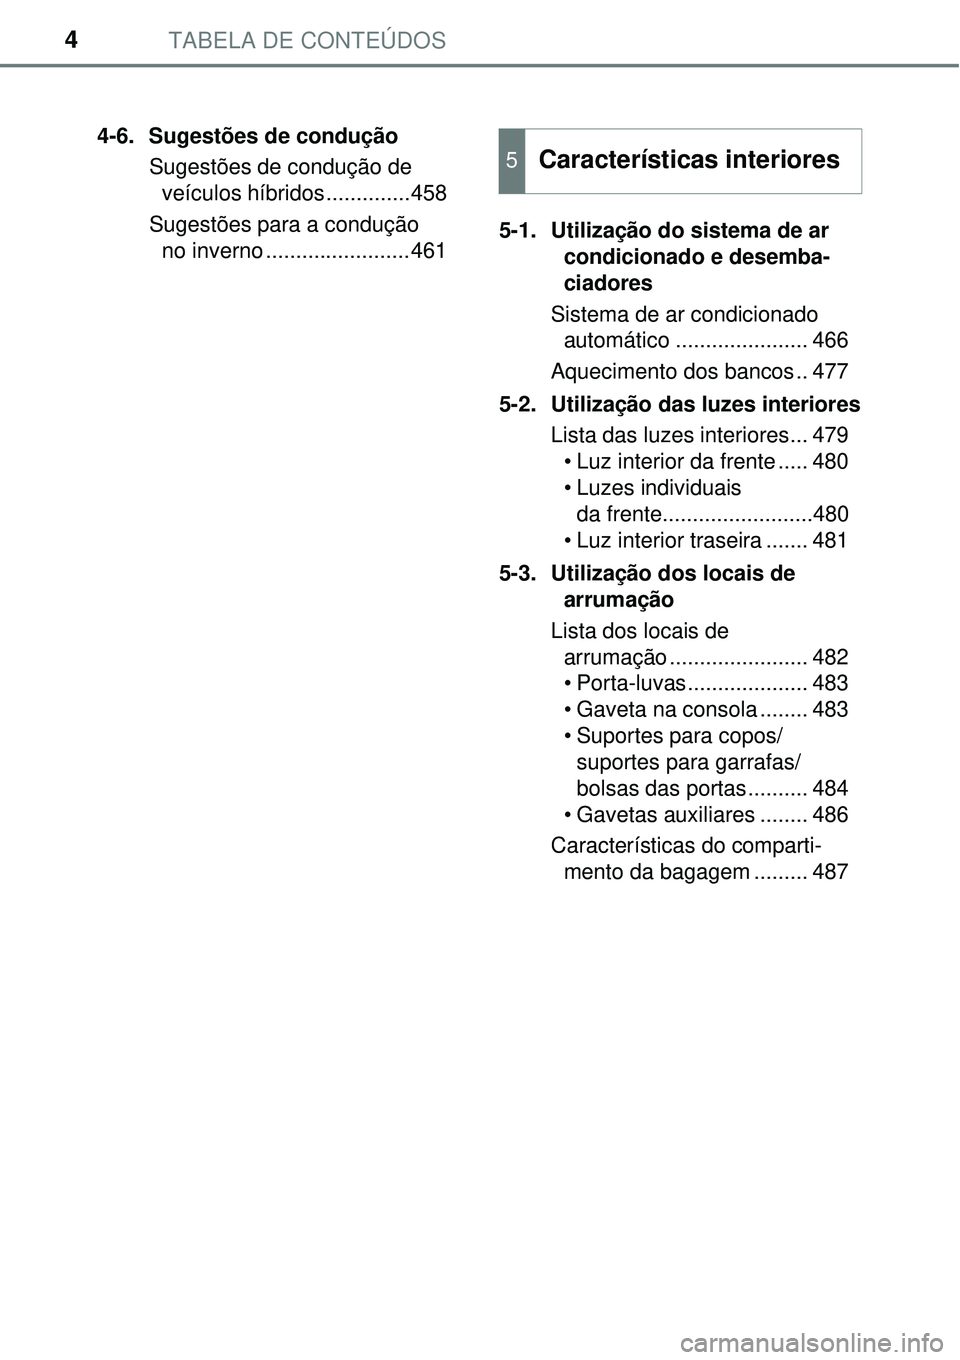 TOYOTA PRIUS 2015  Manual de utilização (in Portuguese) TABELA DE CONTEÚDOS4
4-6. Sugestões de condução
Sugestões de condução de
veículos híbridos..............458
Sugestões para a condução 
no inverno ........................4615-1. Utilizaç�